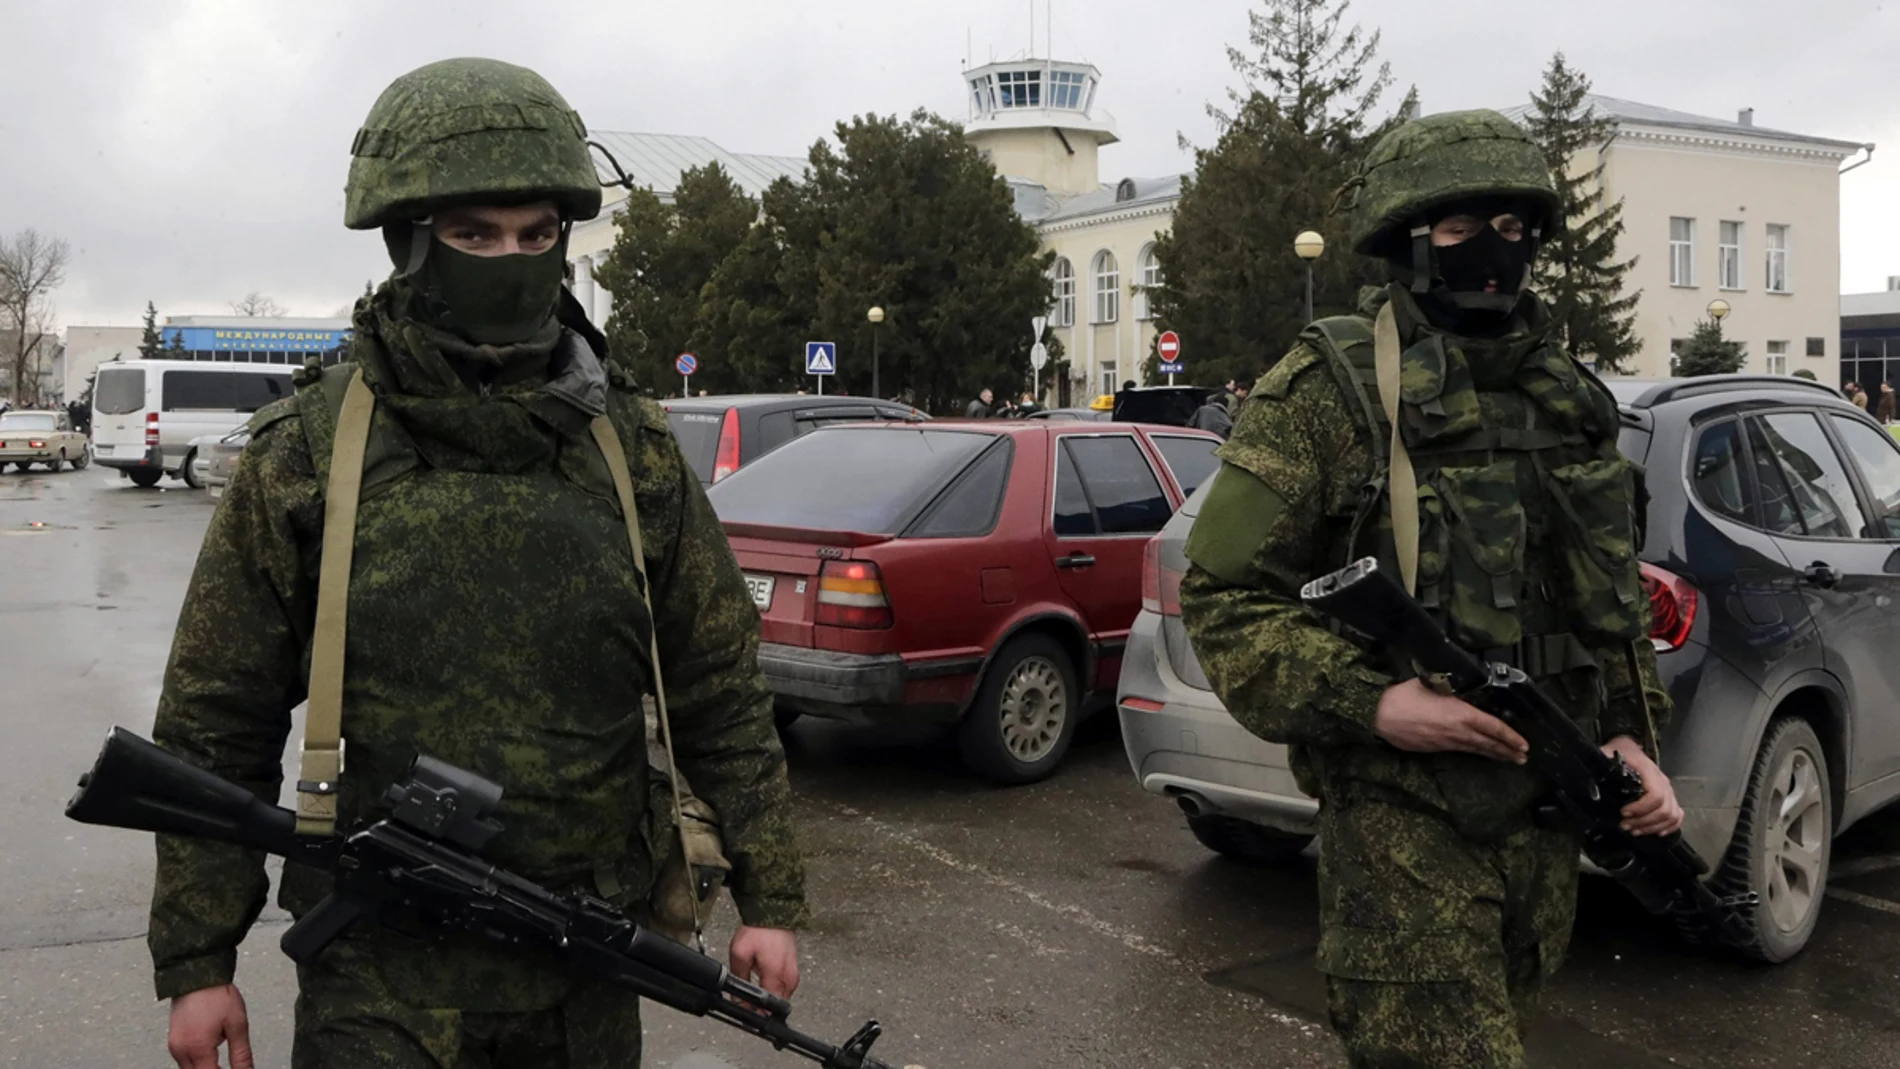 Hombres sin identificar vestidos de militares en Crimea